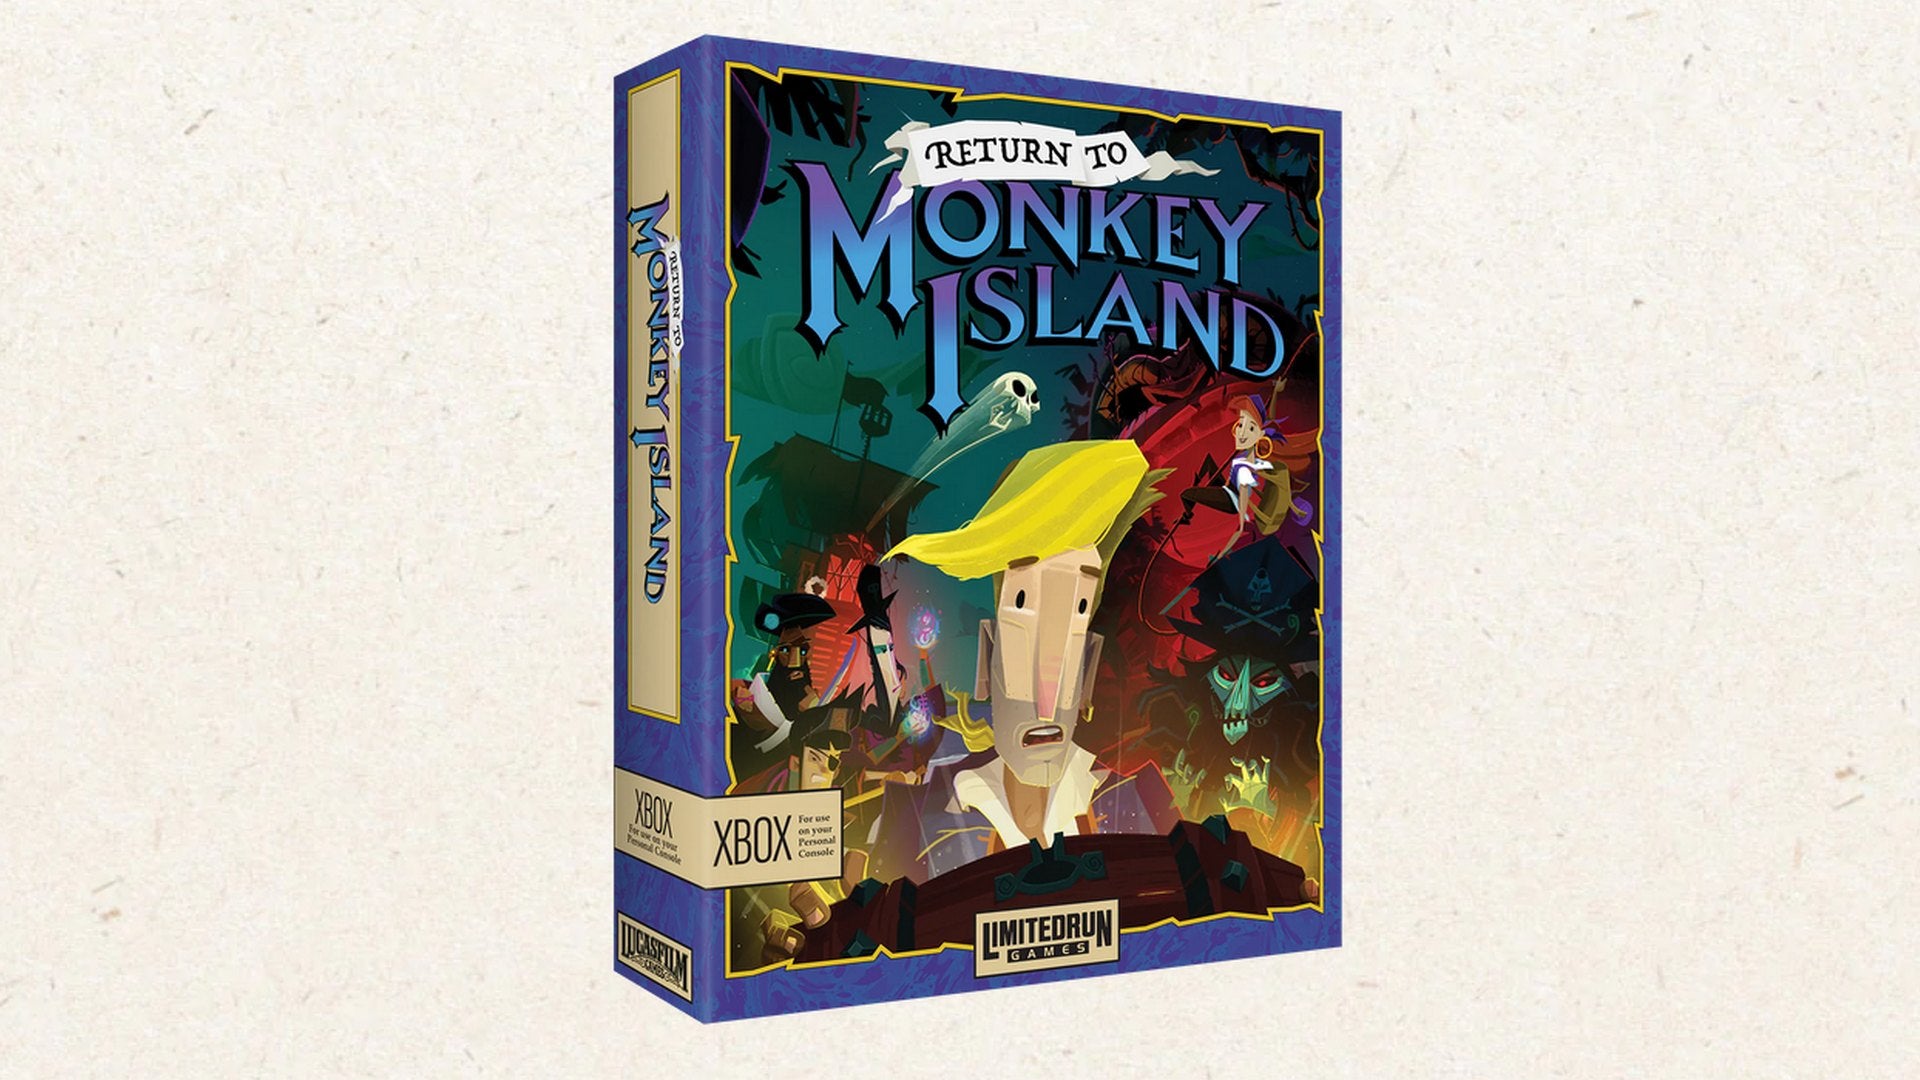 Return to Monkey Island: Limited Run Games bringt Handelsversion und Collector's Edition.